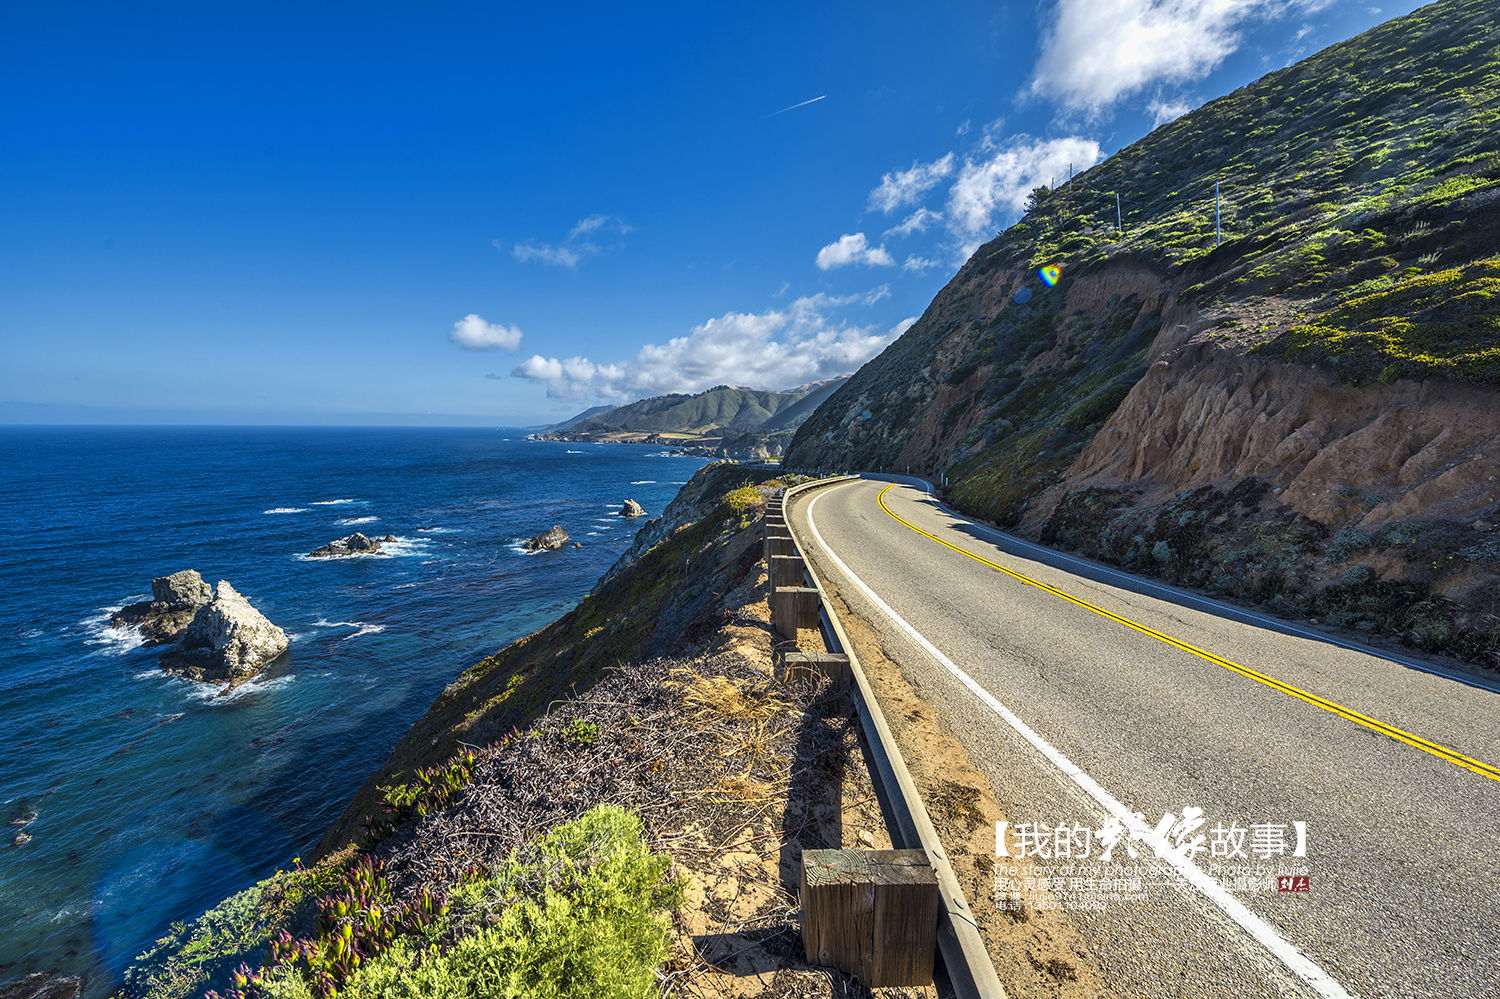 【携程攻略】洛杉矶市加州1号公路景点,美国加州一号公路被喻为是世界上风景最美丽的驾驶路线之一。蜿蜒曲折…